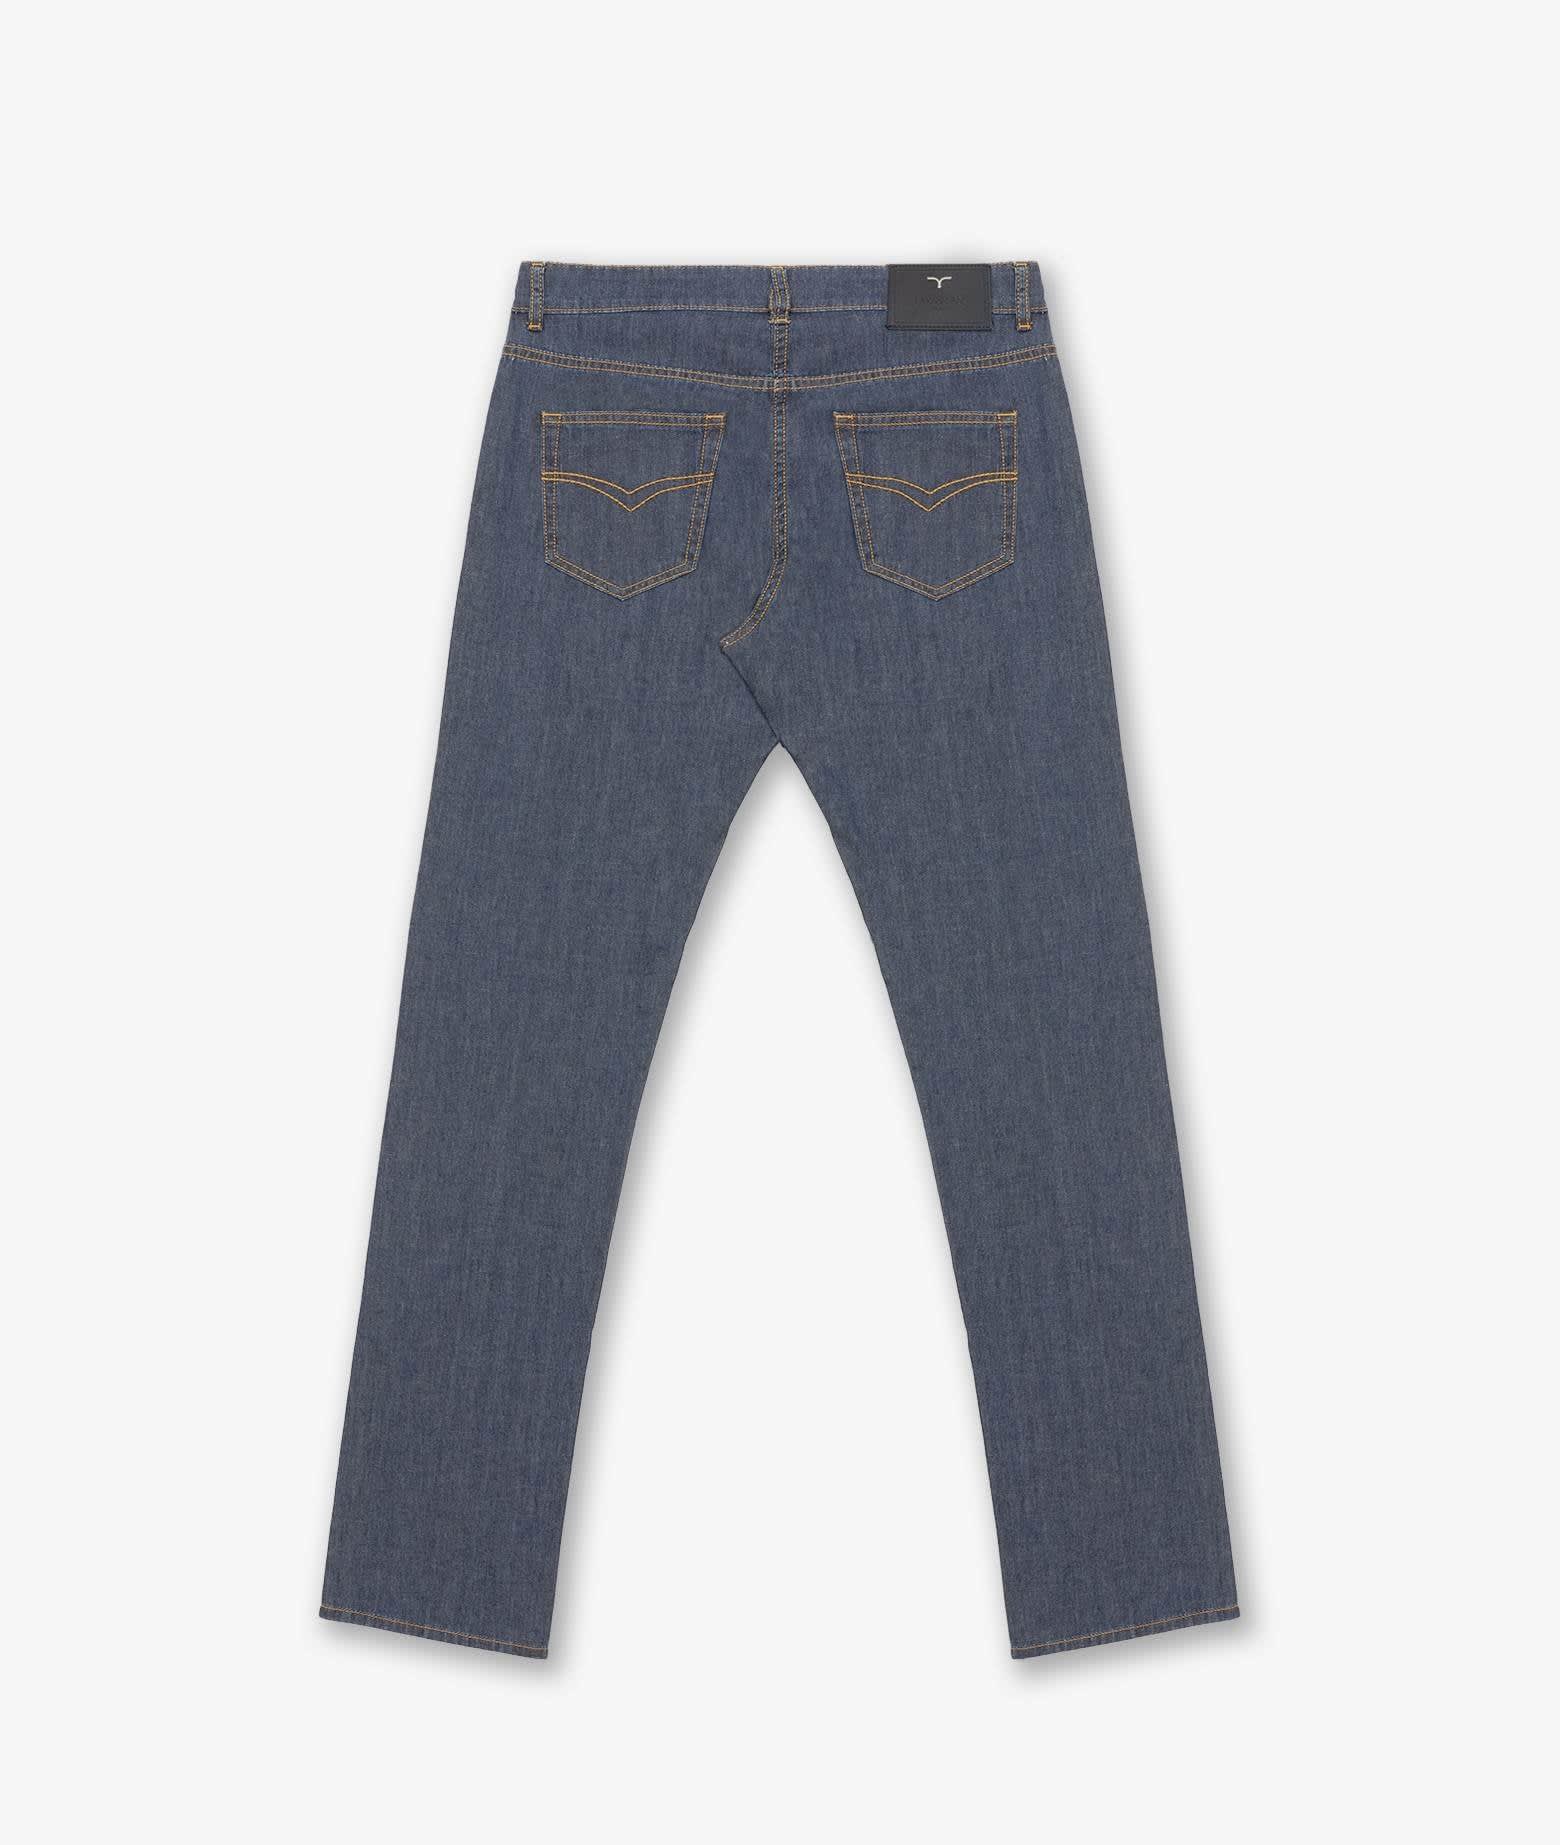 Shop Larusmiani Trousers Jeans Jeans In Blue